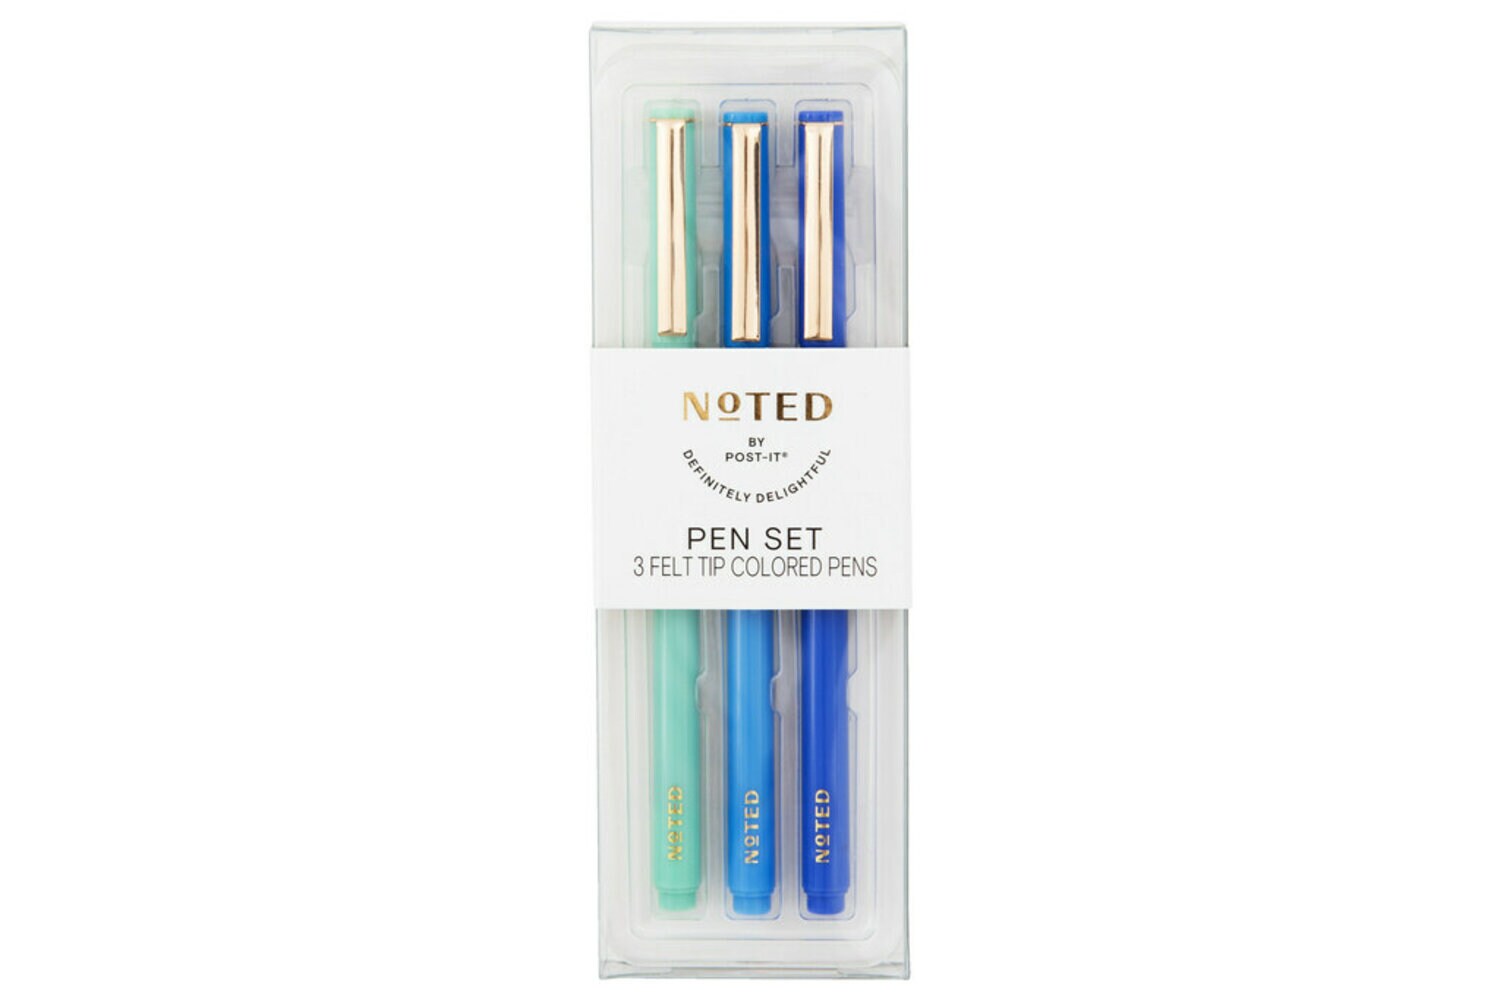 7100306557 - Post-it 3pk Pens NTD8-PEN-2, 3 Felt Tip Colored Pens